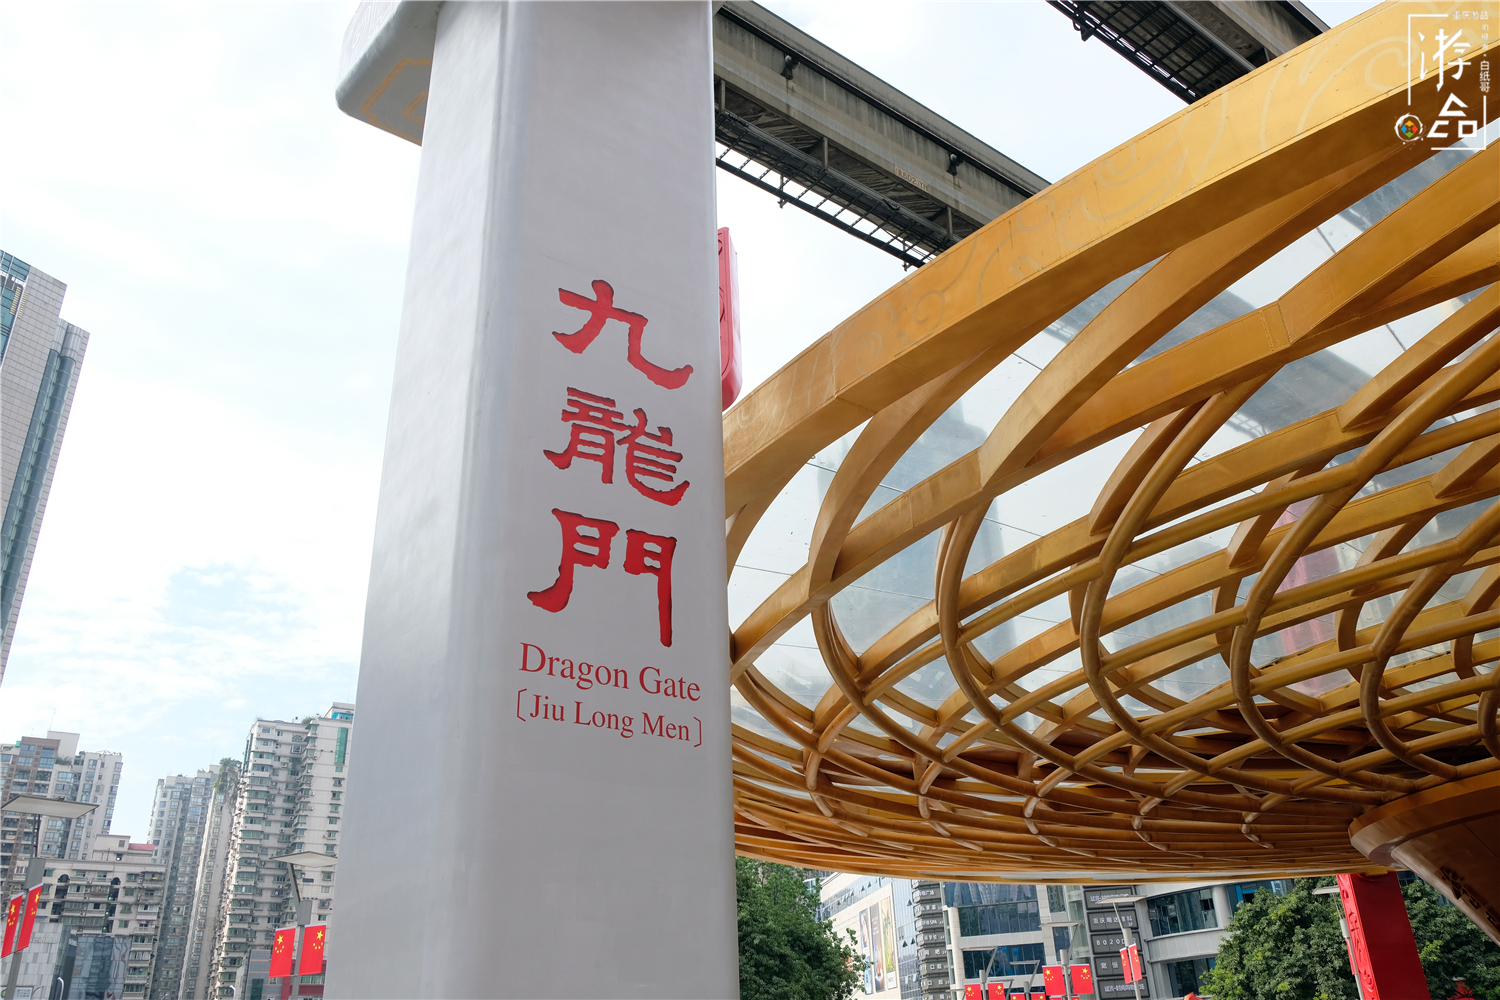 重庆城的奇特地标:8个月之后,为什么还是不肯放过九龙门?